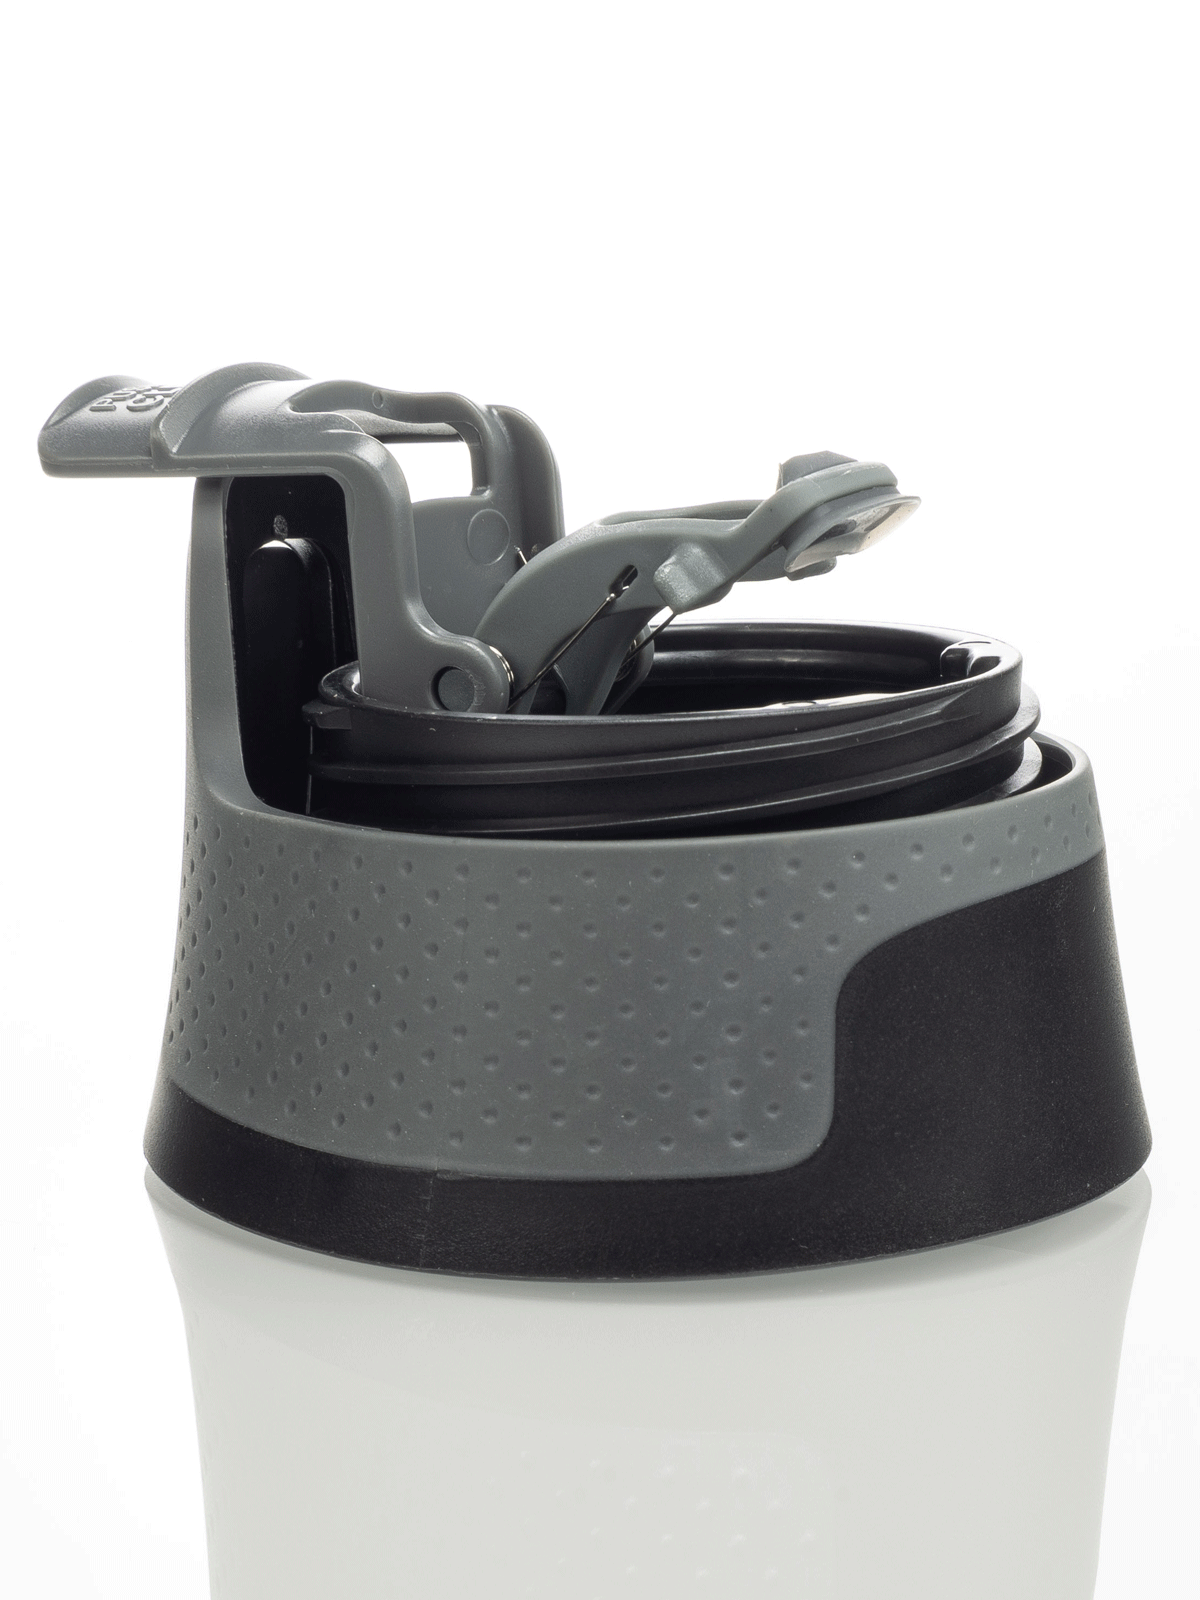 Spare cap for Contigo West Loop mug - black